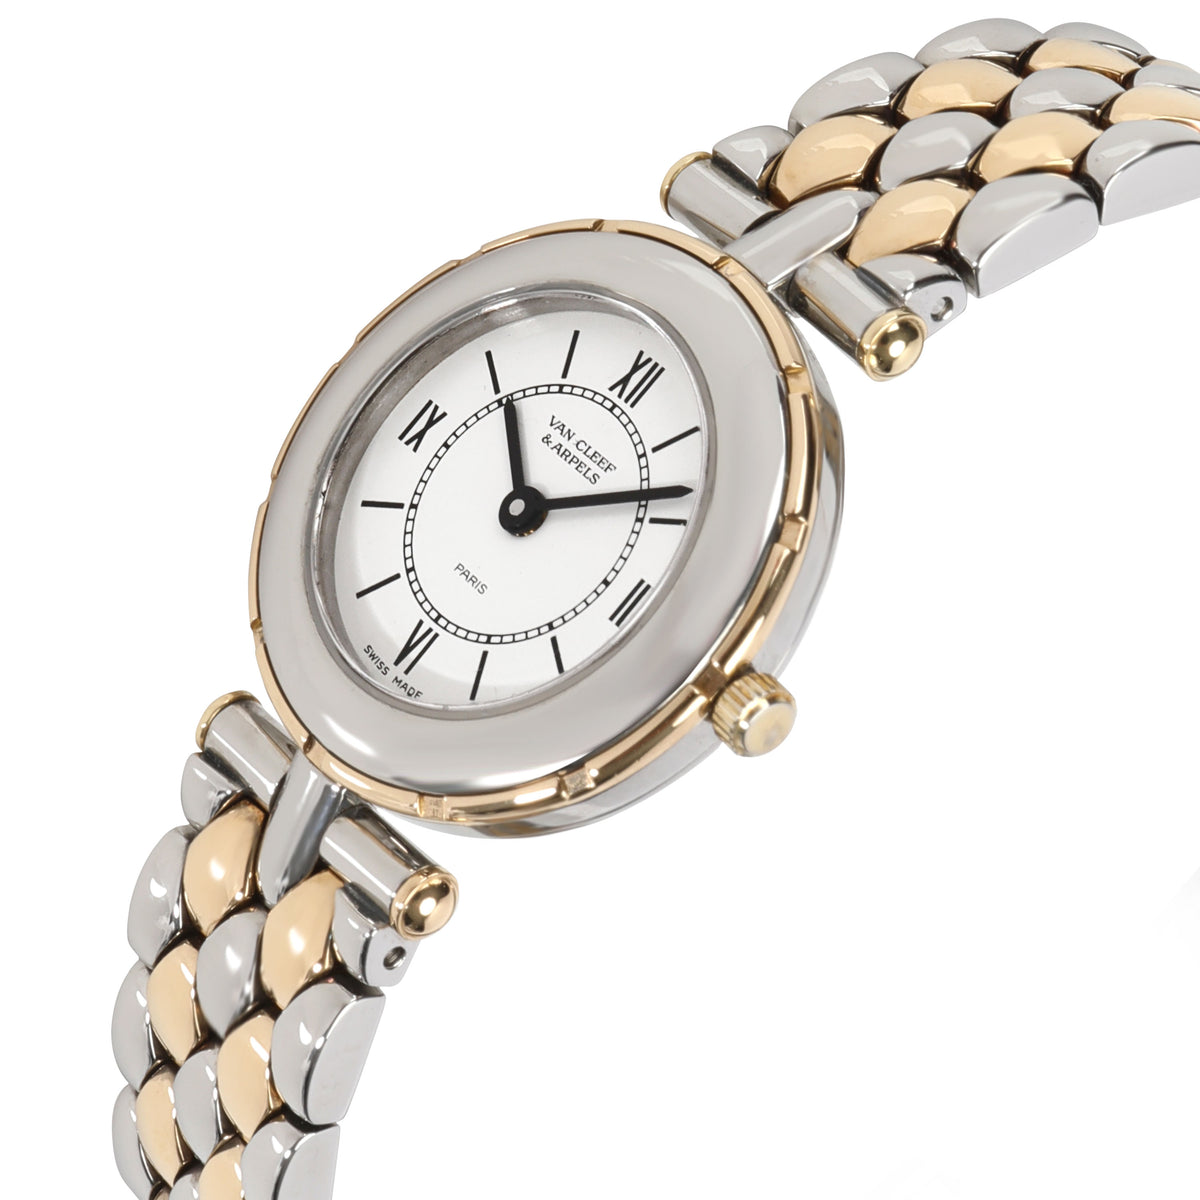 Van Cleef & Arpels La Collection 43607 HX4 Women's Watch in 18kt Stainless Steel